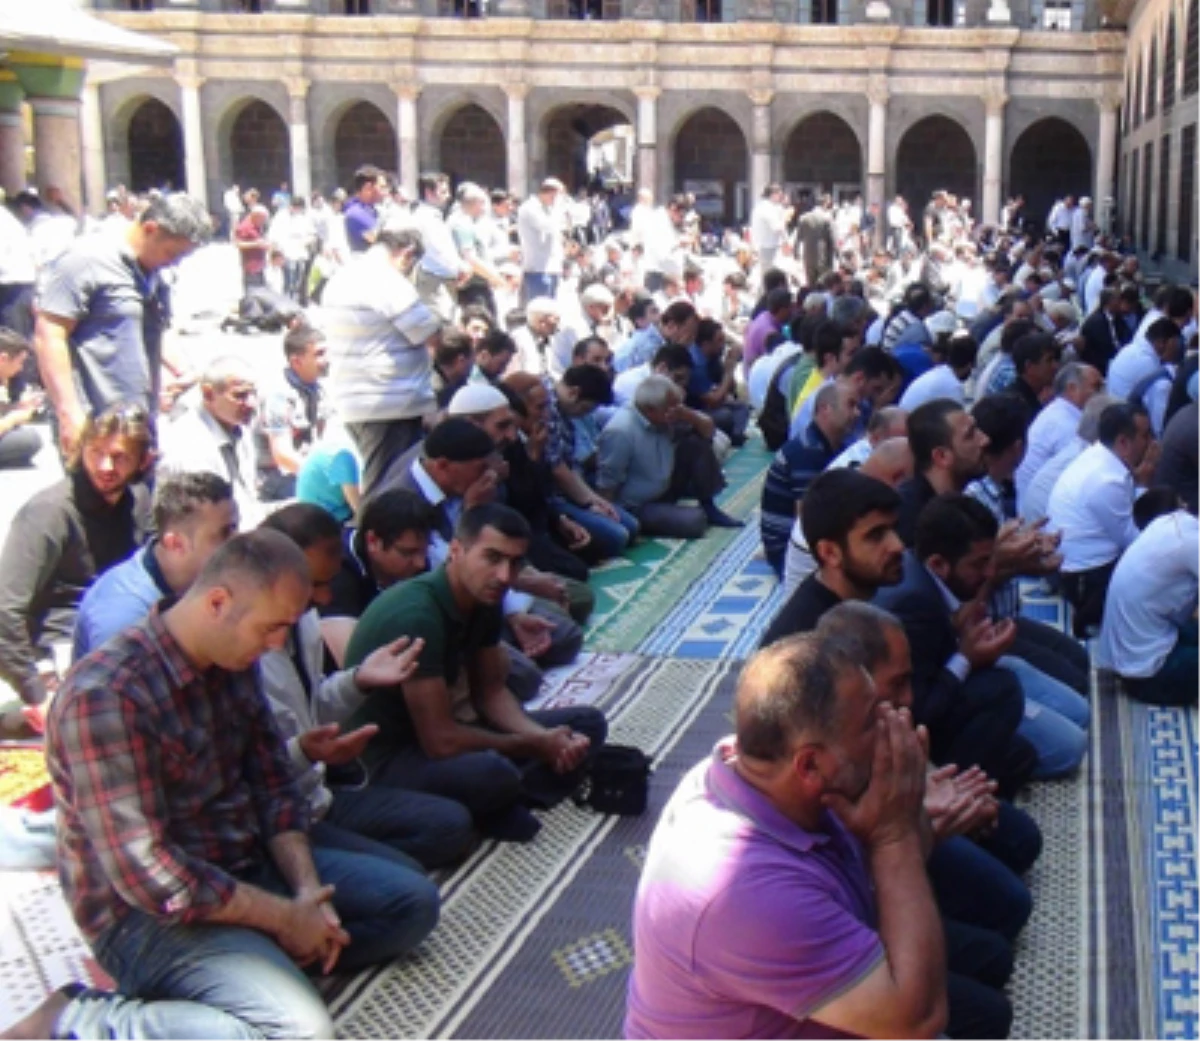 Ulu Cami İmamı:Baş, Kol, Bacak Kesenlerin Müslümanlıkla Alakası Yok